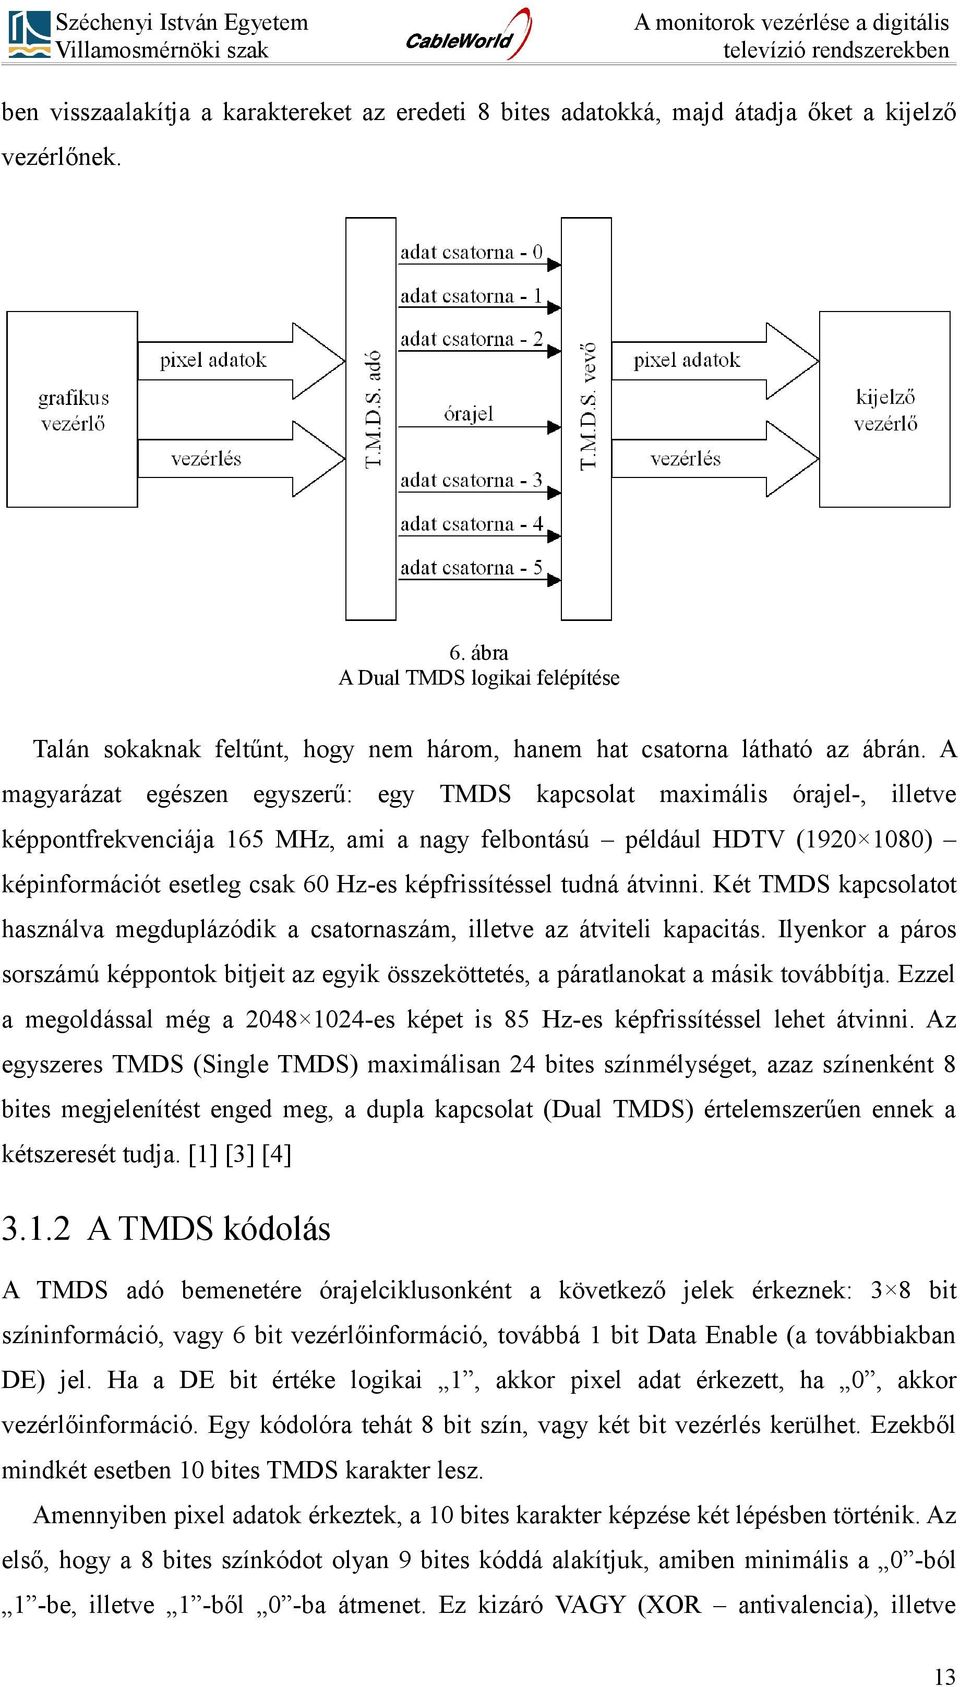 A magyarázat egészen egyszerű: egy TMDS kapcsolat maximális órajel-, illetve képpontfrekvenciája 165 MHz, ami a nagy felbontású például HDTV (1920 1080) képinformációt esetleg csak 60 Hz-es